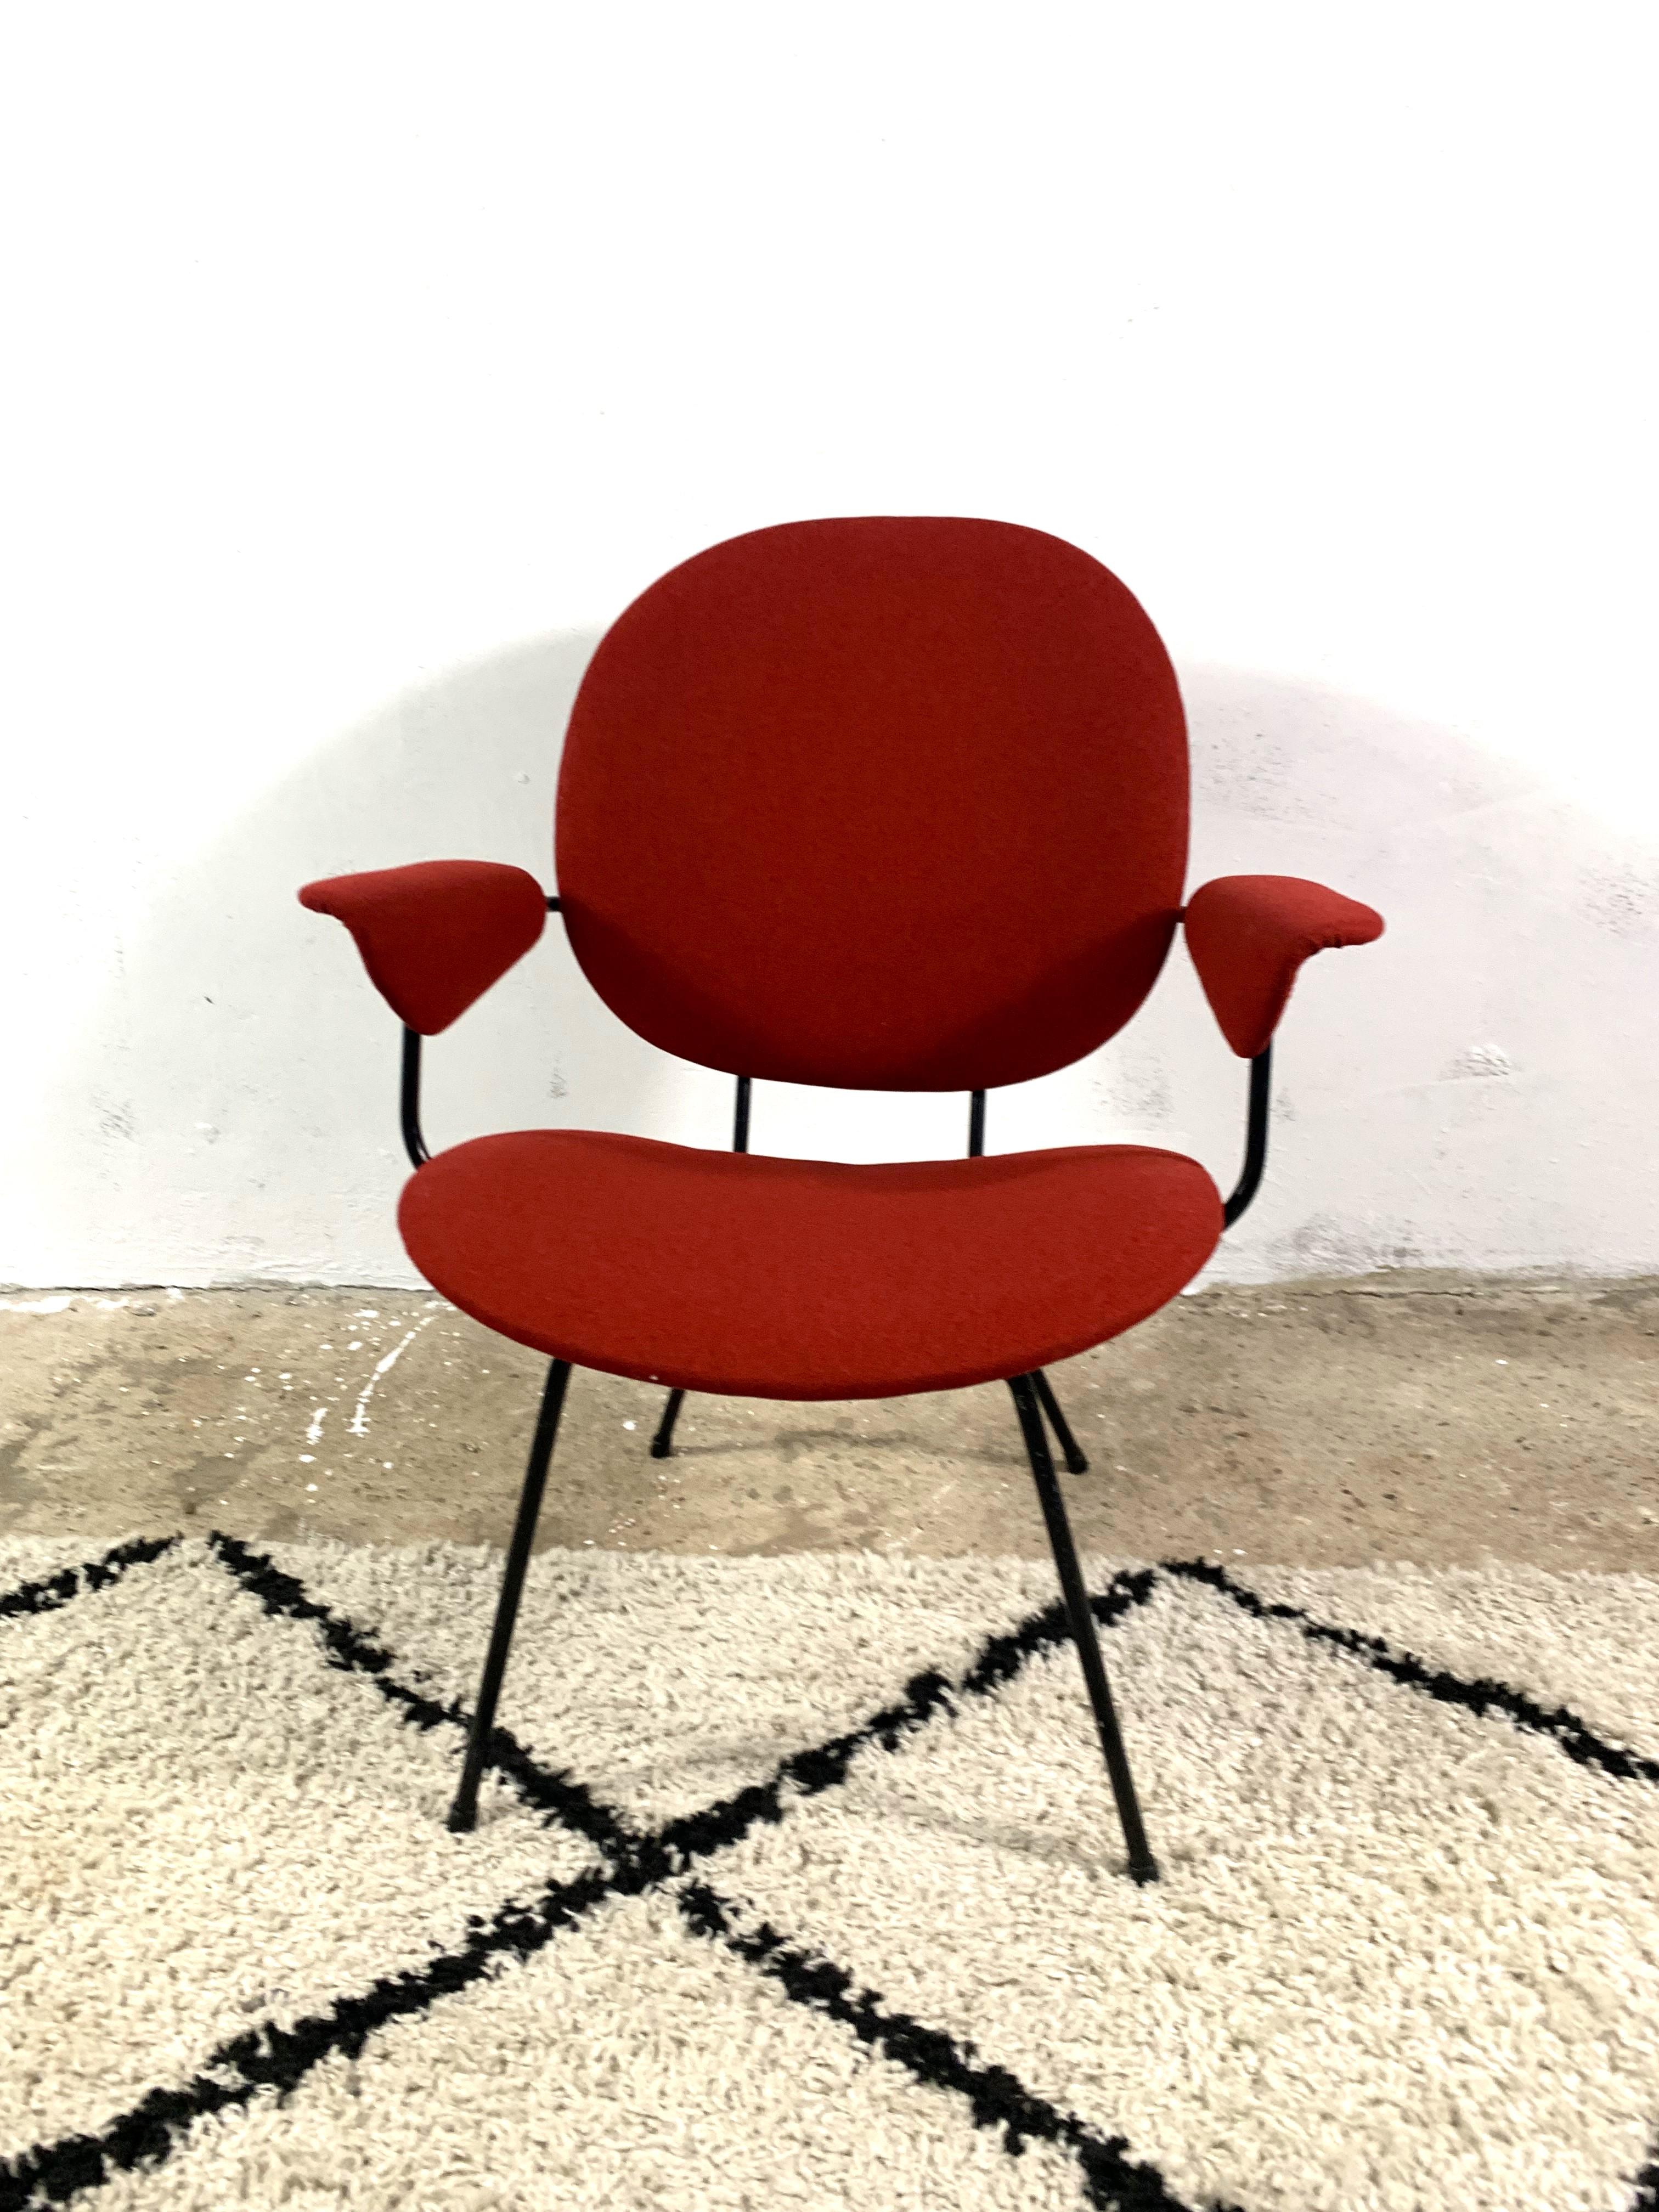 Magnifique fauteuil conçu par Willem Hendrik Gispen pour le label Kembo. Modèles  302, qui est une version avec accoudoirs. Les sièges sont dotés d'un nouveau rembourrage et d'un nouveau revêtement en tissu espagnol, un mélange de laine et de